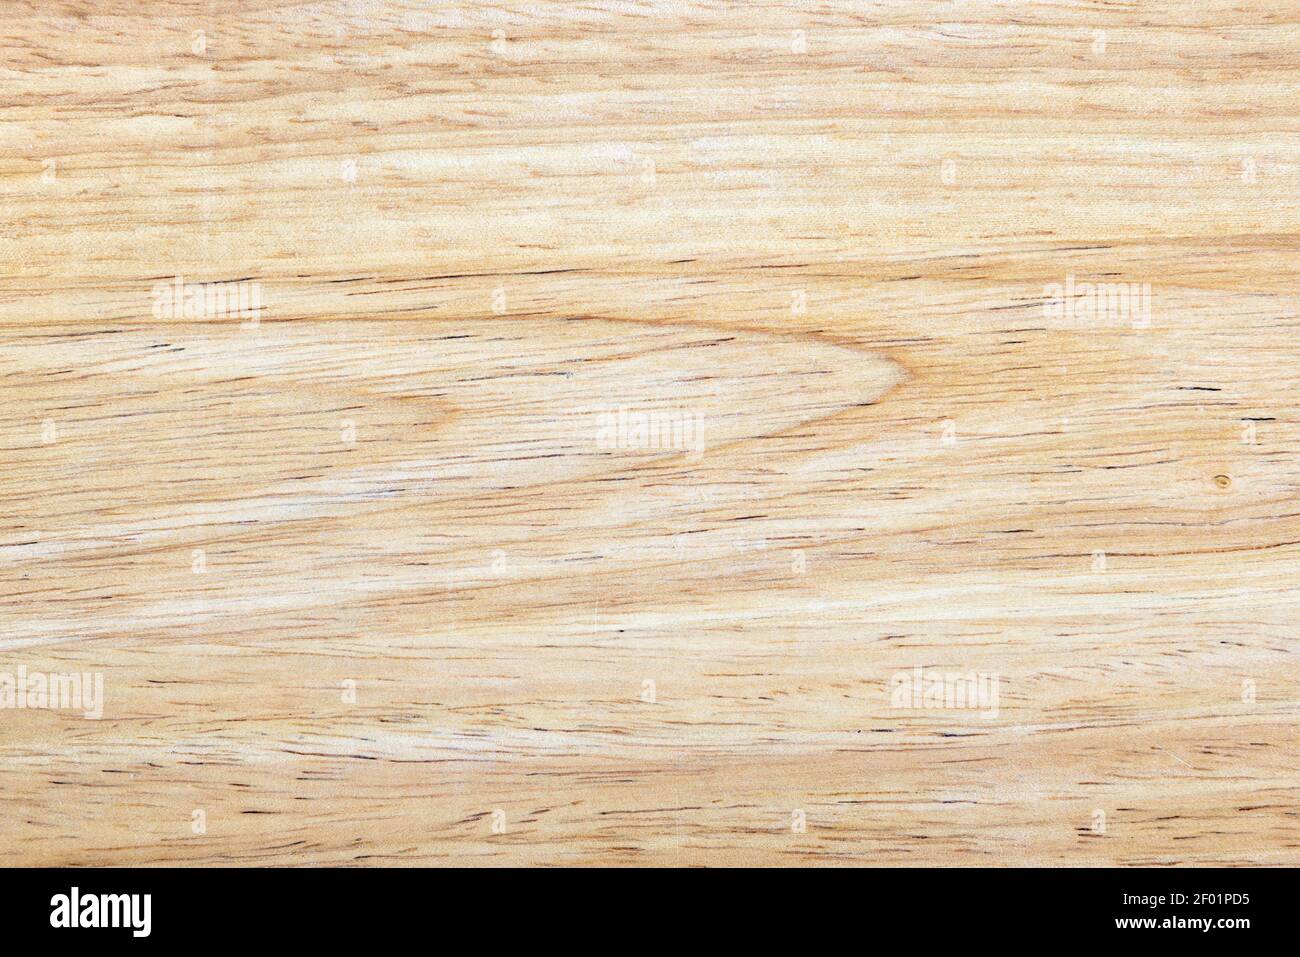 Holz oder Sperrholz für Hintergrund, helle Holztisch mit Natur Farbe und Muster. Abstrakter Hintergrund mit Holzstruktur. Draufsicht auf texturierte Schreibtischoberfläche oder Stockfoto